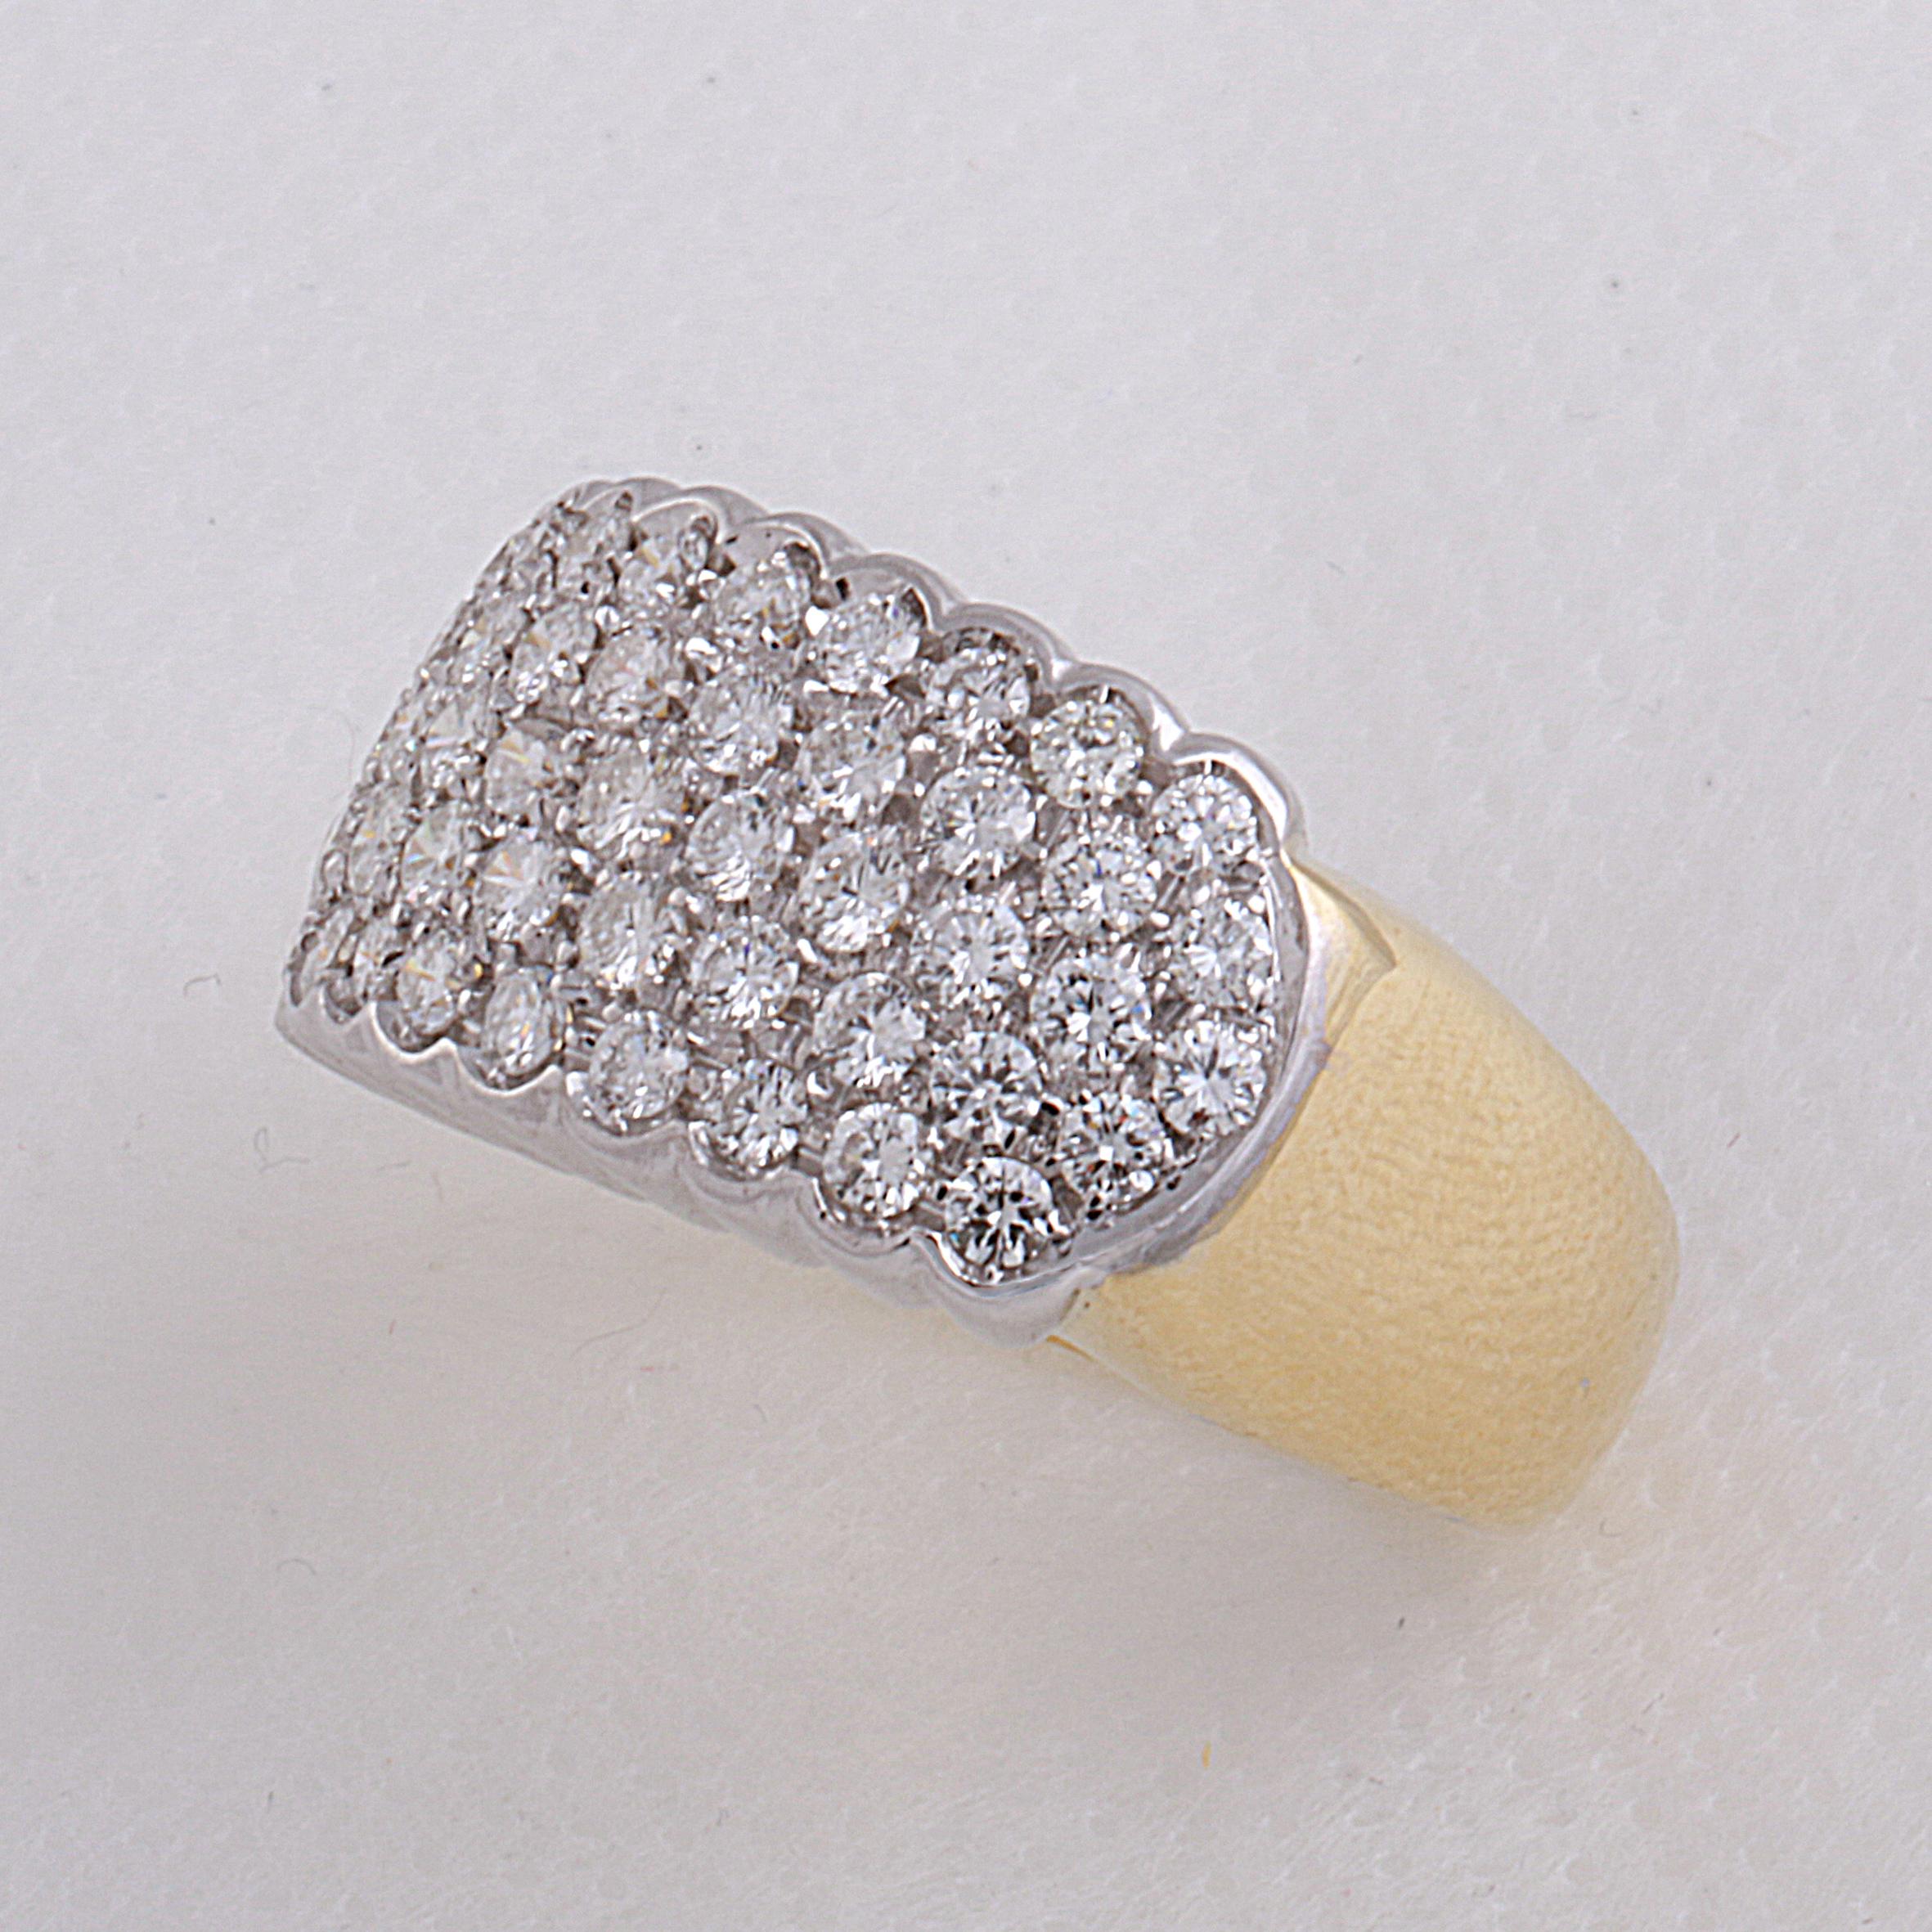 0.70 Carat Pavé Set Diamond Band Ring in 18 Karat Yellow and White Gold 3